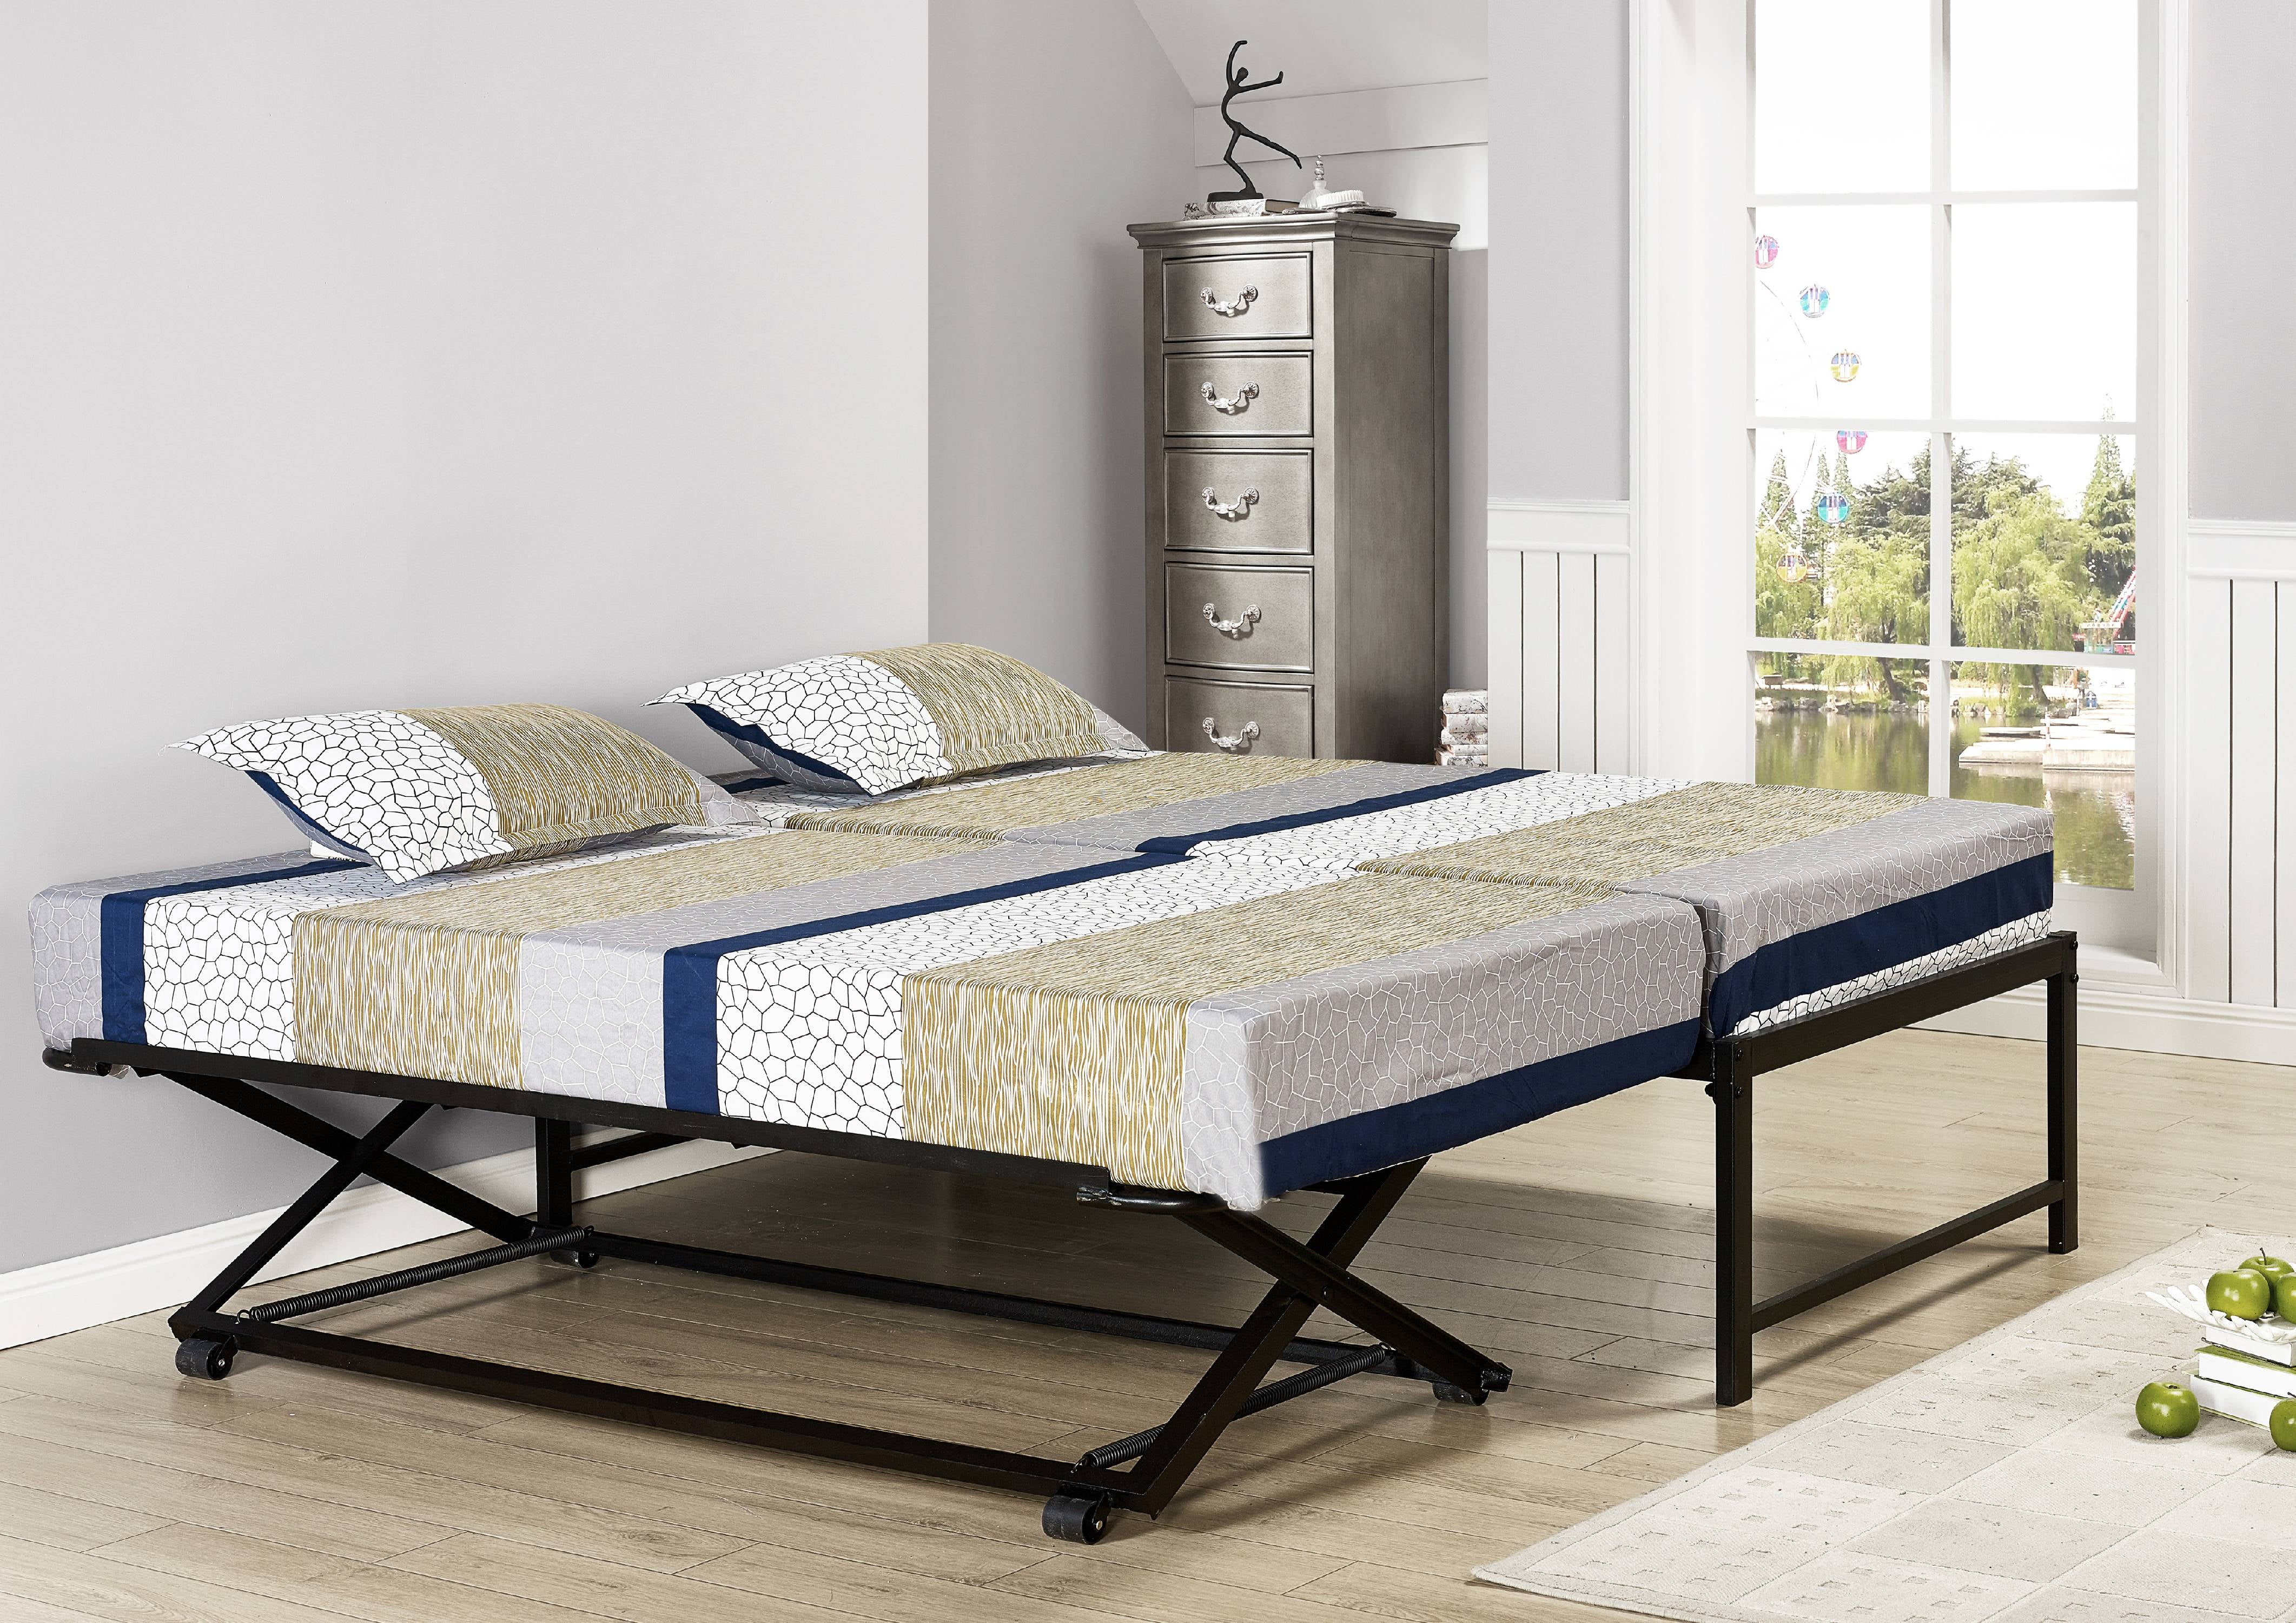 Twin Size Platform Daybed Bed Frame, Pop Up Trundle Bed Frames Only